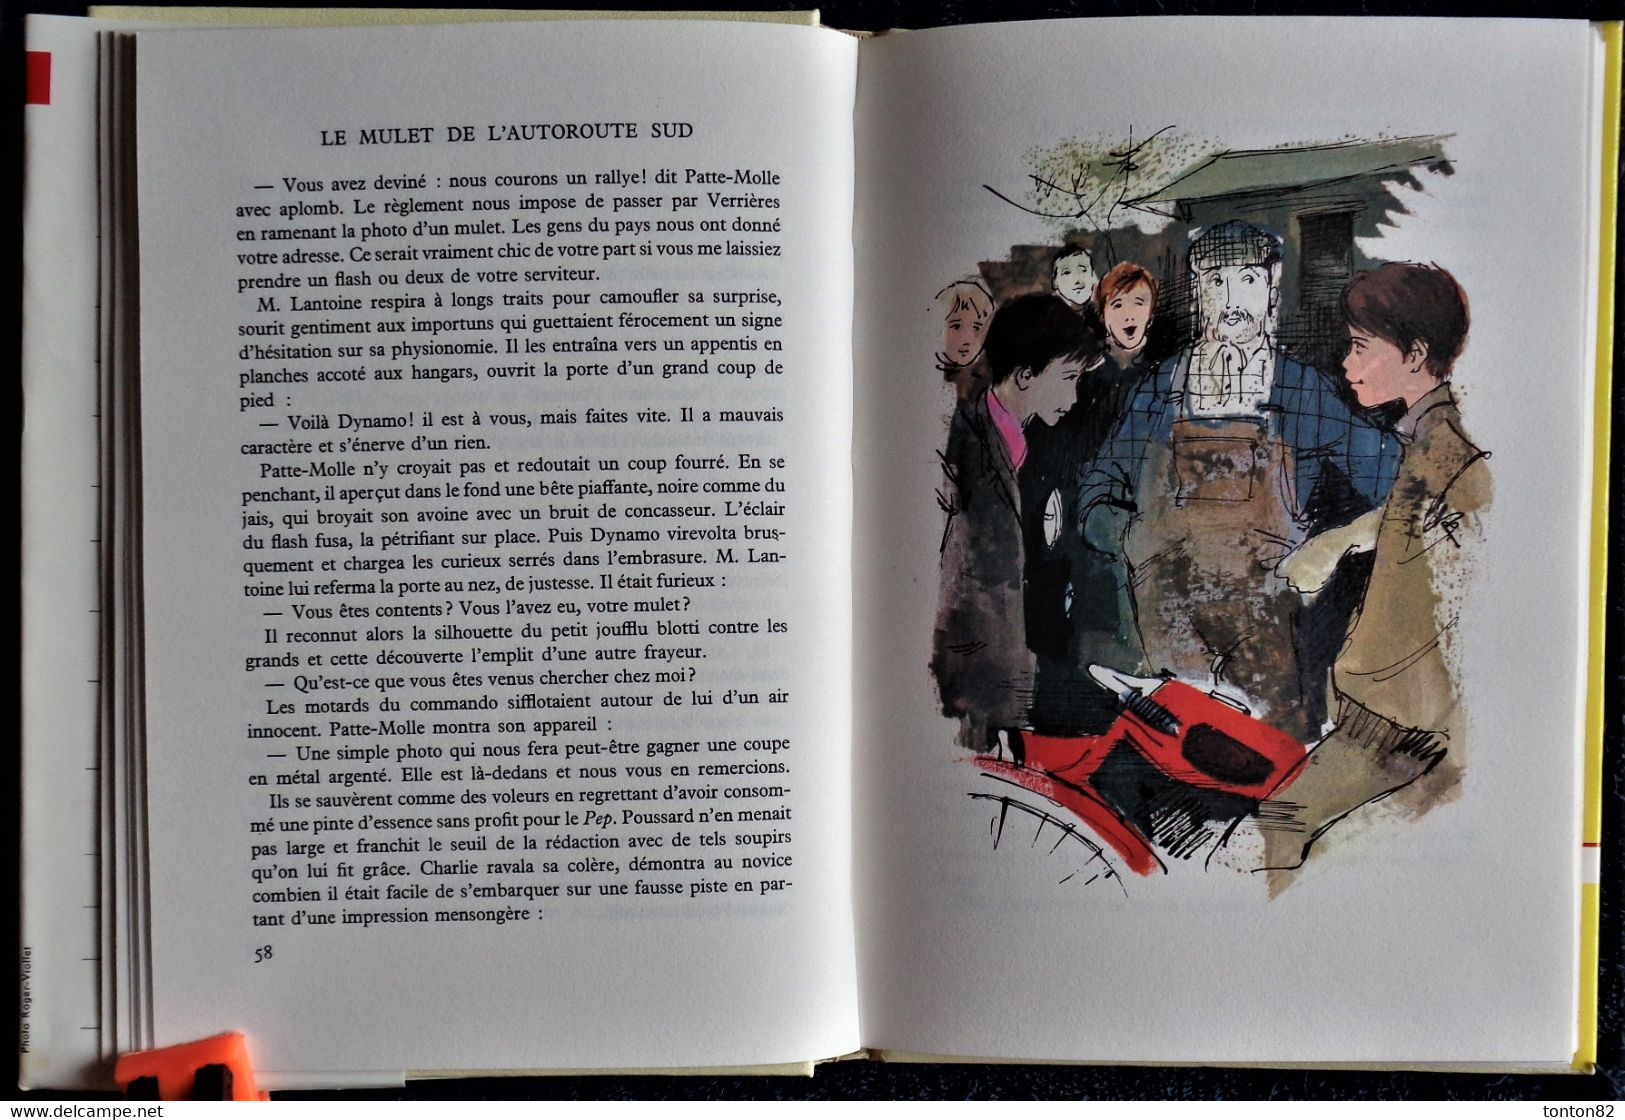 Paul Berna - Le Commissaire Sinet Et Le Mystère De L'Autoroute Du Sud - Rouge Et Or Souveraine 697 - ( 1967 ) . - Bibliothèque Rouge Et Or